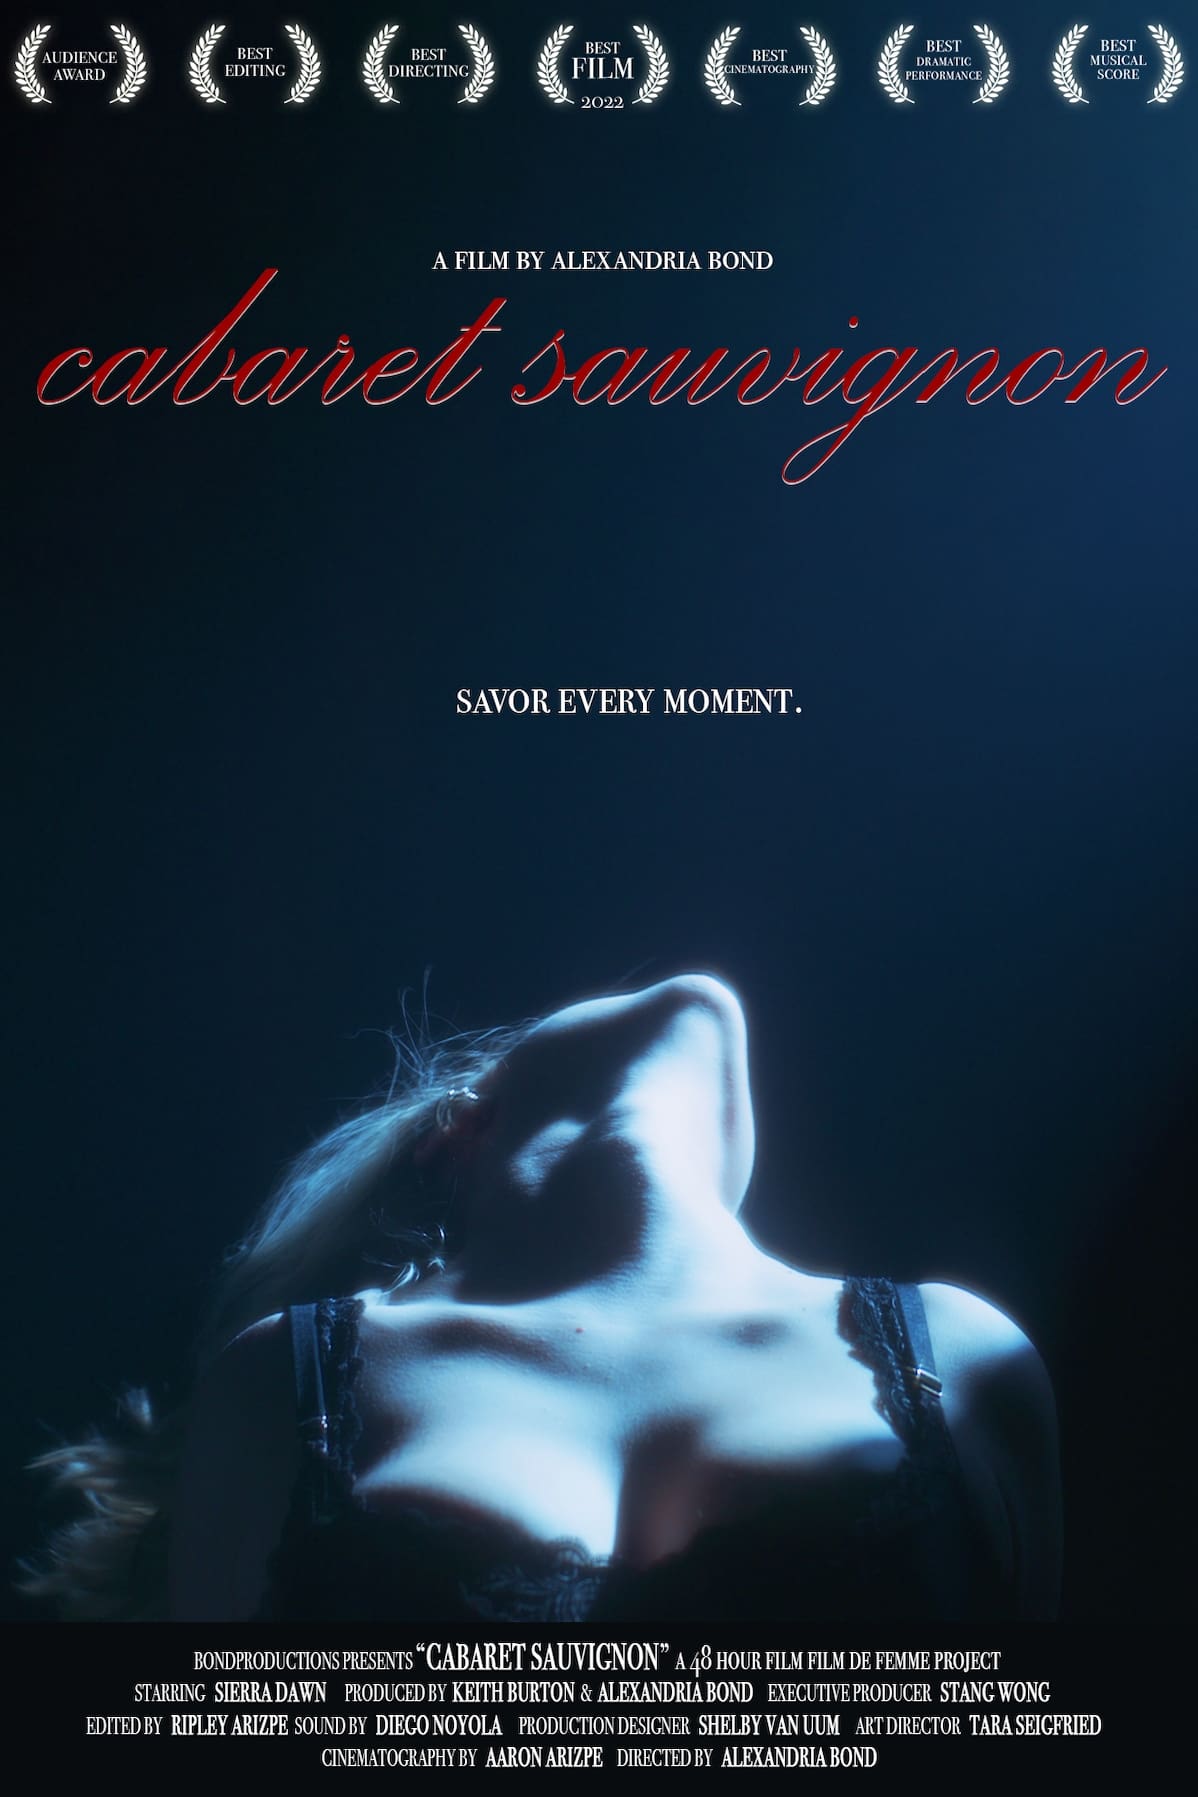 Cabaret Sauvignon